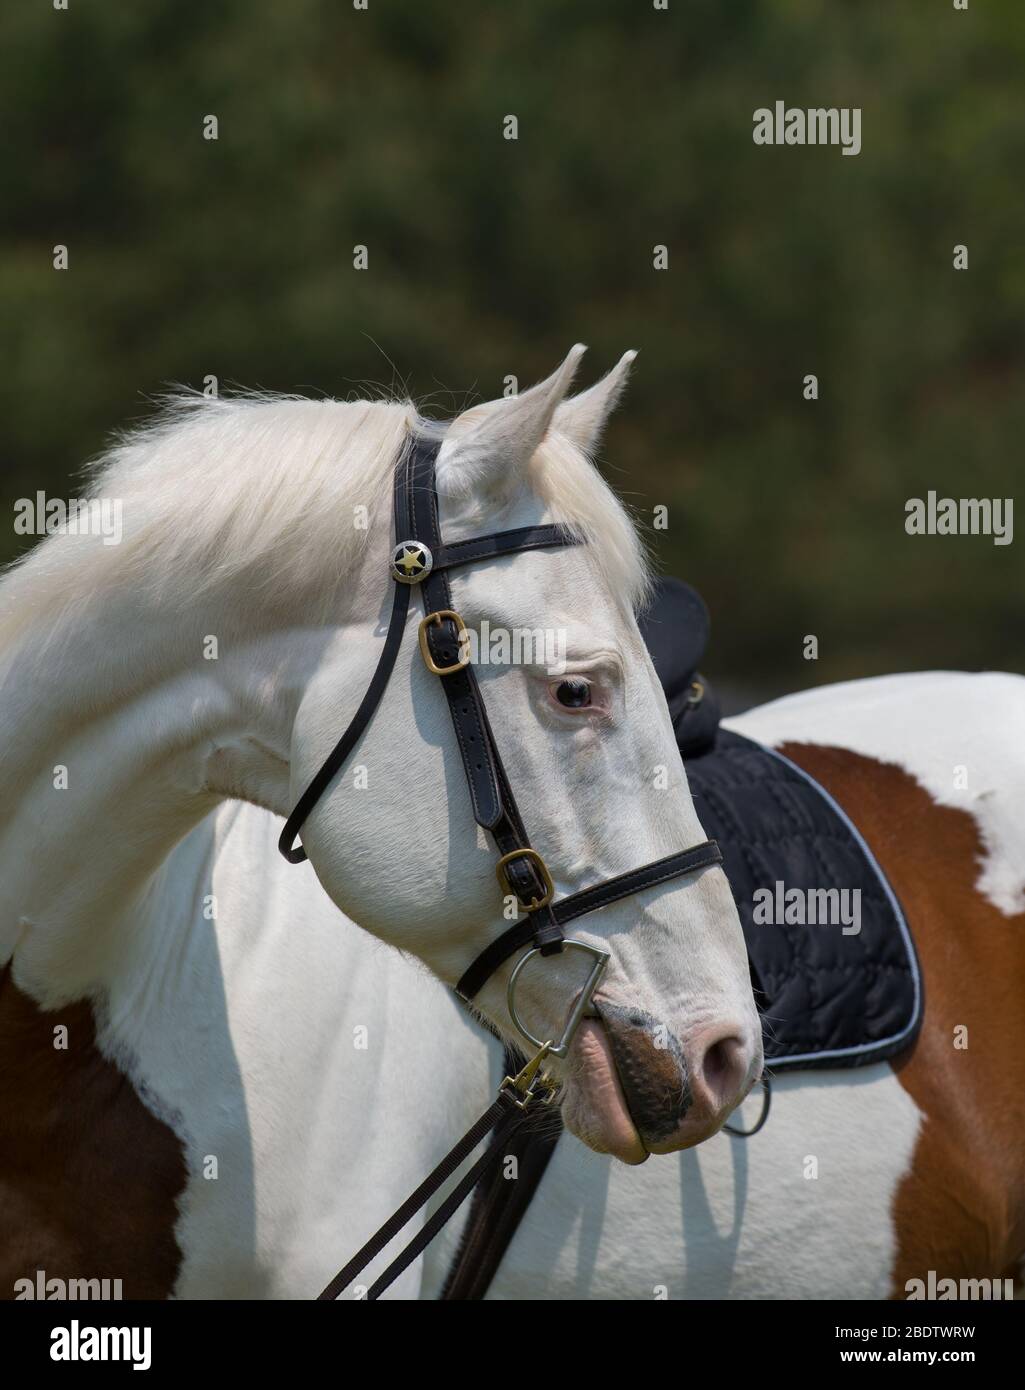 Portrait de Paint Horse Head Shot avec pont en cuir anglais Trail Bridgle avec pince de sortie et étoile sur la tête Stall Clean White Horse avec patchs marron Banque D'Images